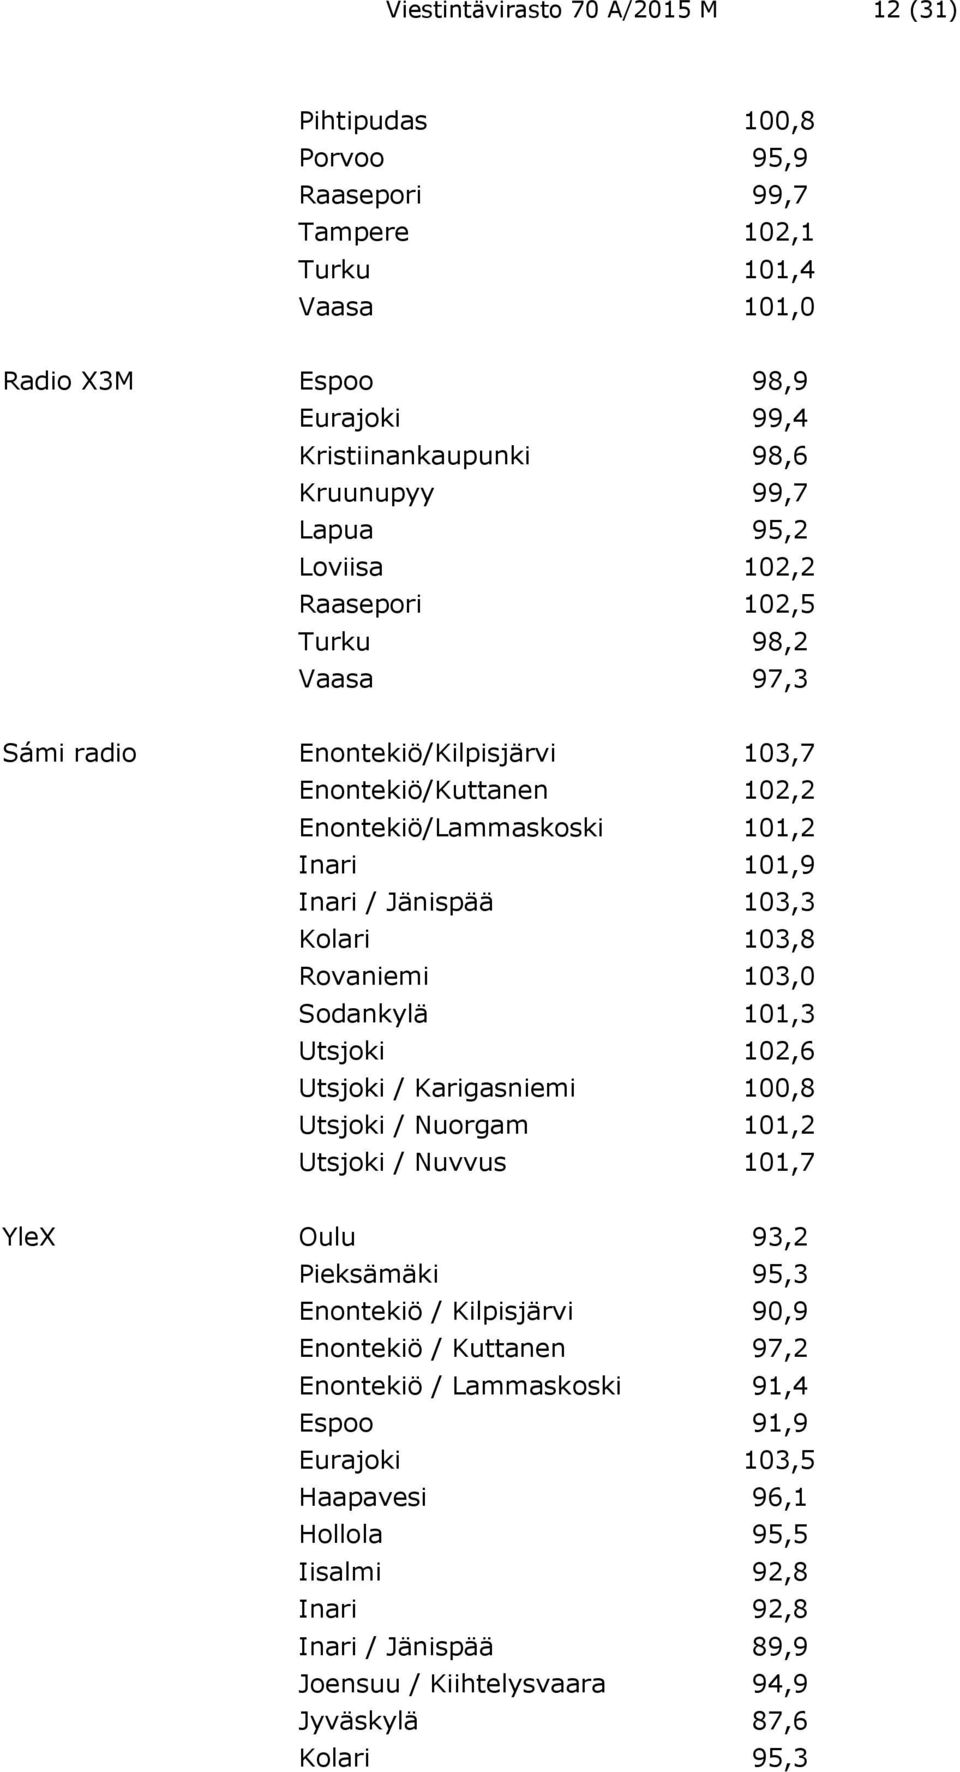 103,8 Rovaniemi 103,0 Sodankylä 101,3 Utsjoki 102,6 Utsjoki / Karigasniemi 100,8 Utsjoki / Nuorgam 101,2 Utsjoki / Nuvvus 101,7 YleX Oulu 93,2 Pieksämäki 95,3 Enontekiö / Kilpisjärvi 90,9 Enontekiö